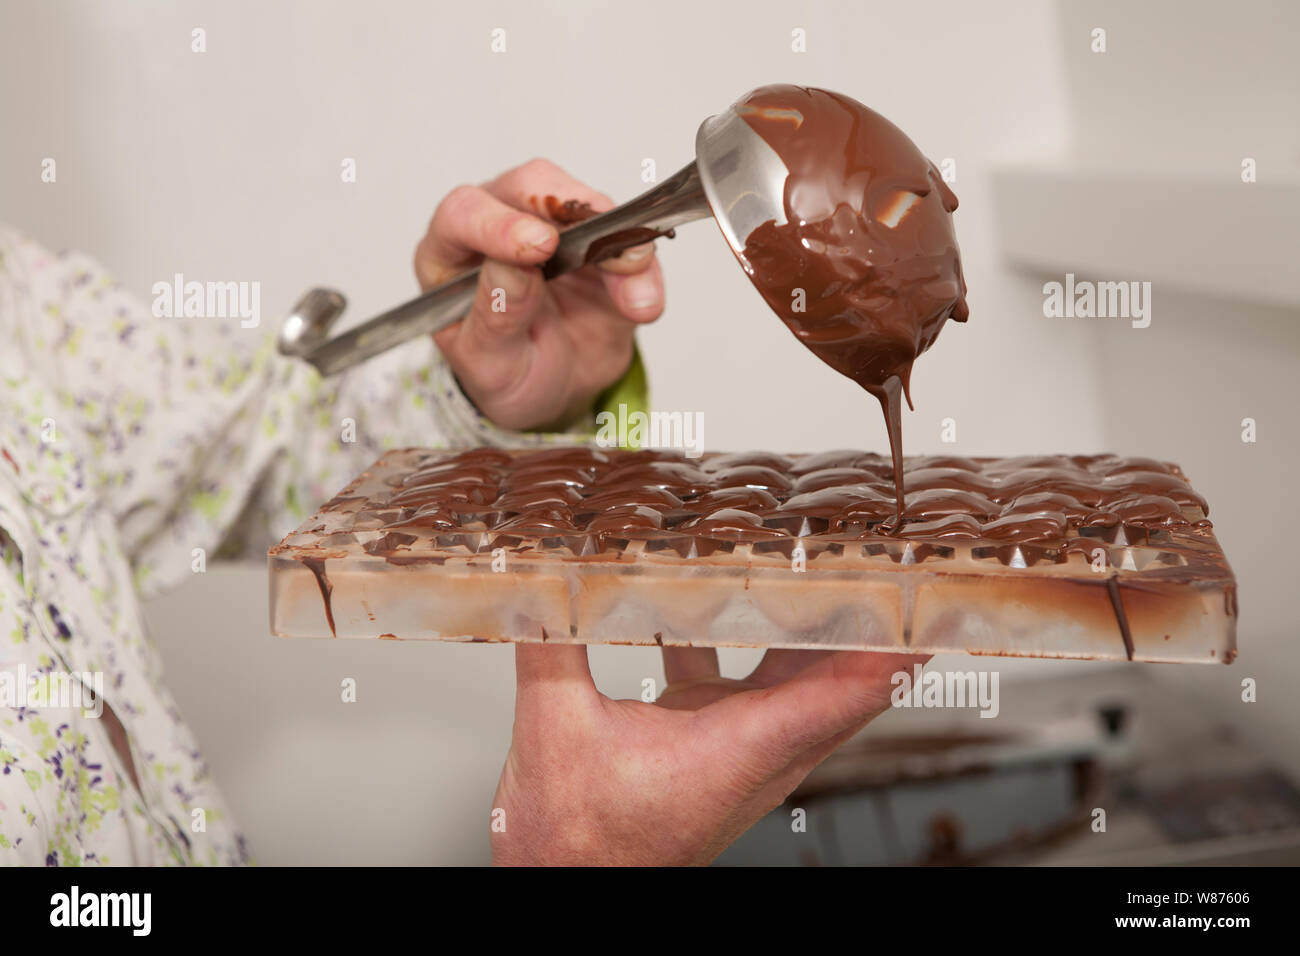 Verser le chocolat fondu dans un moule pour faire des chocolats Photo Stock  - Alamy